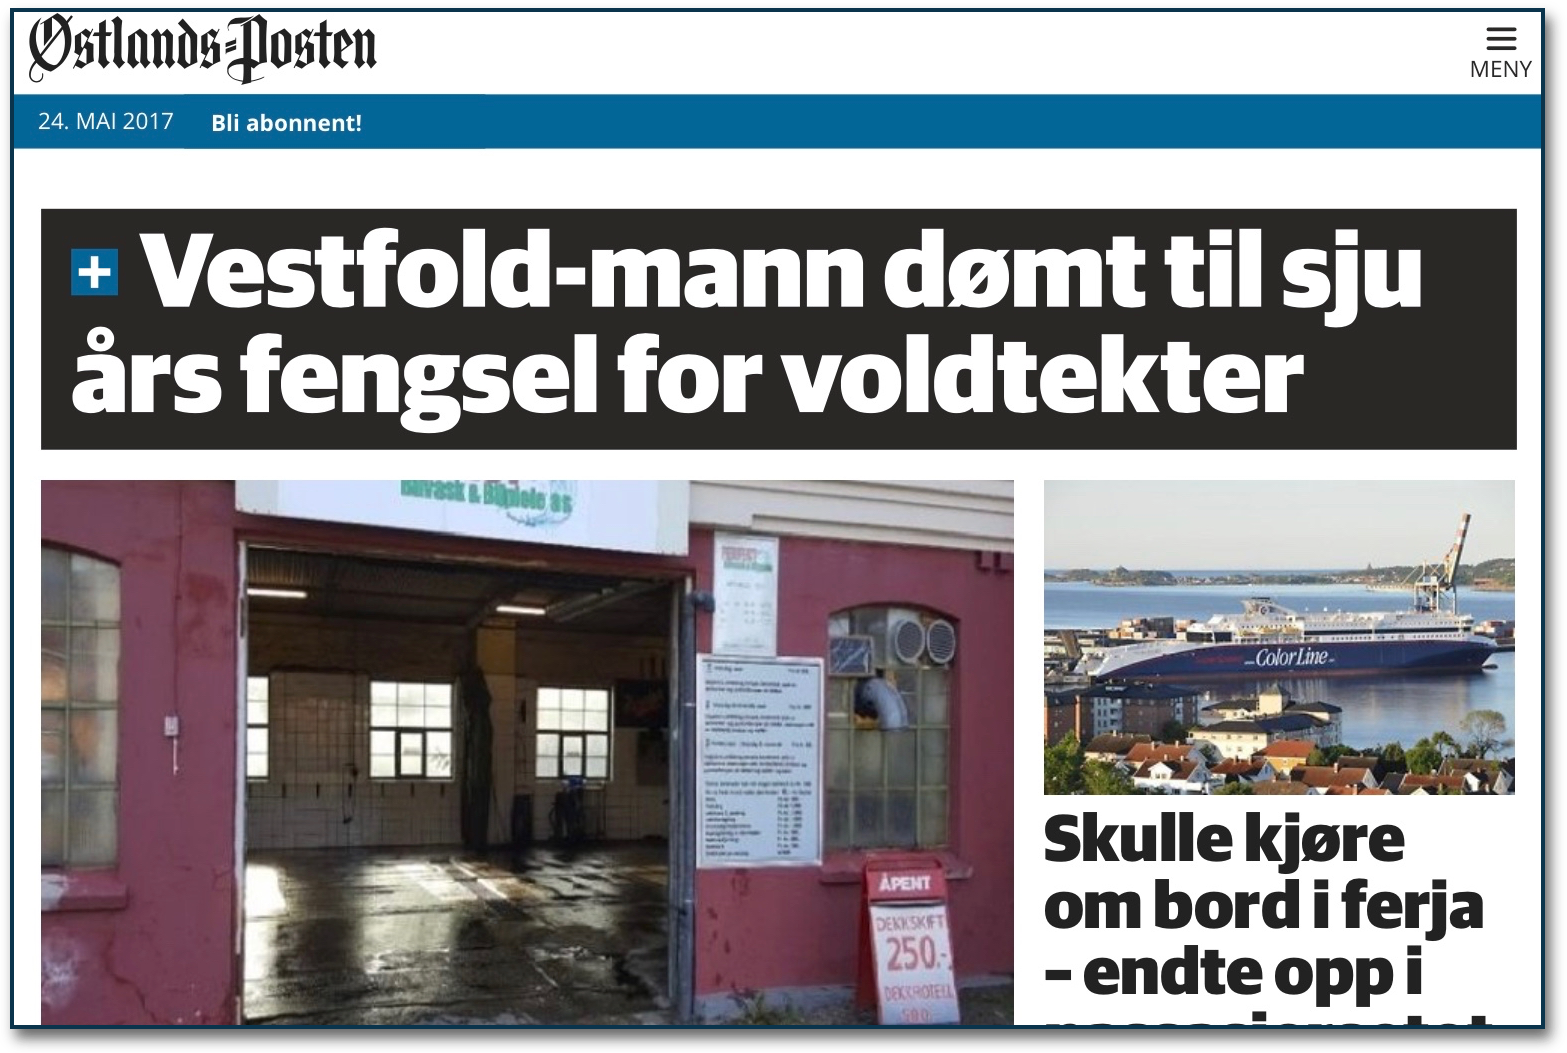 Norwegian paper makes local journalism local again